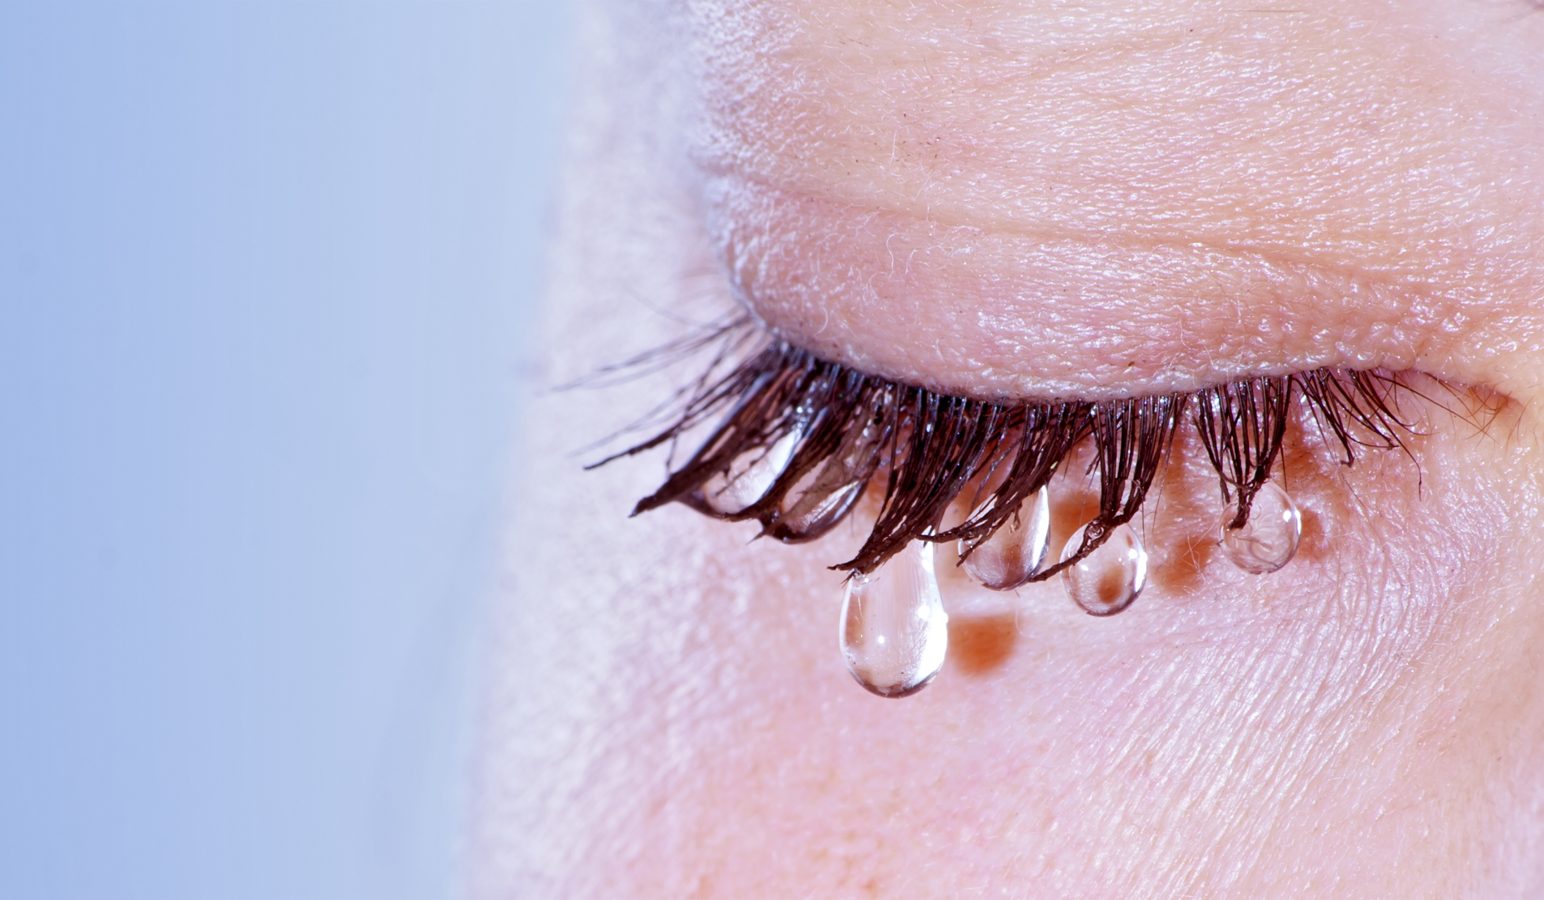 fluid de vedere și lacrimă tratamentul cu laser al vederii slabe